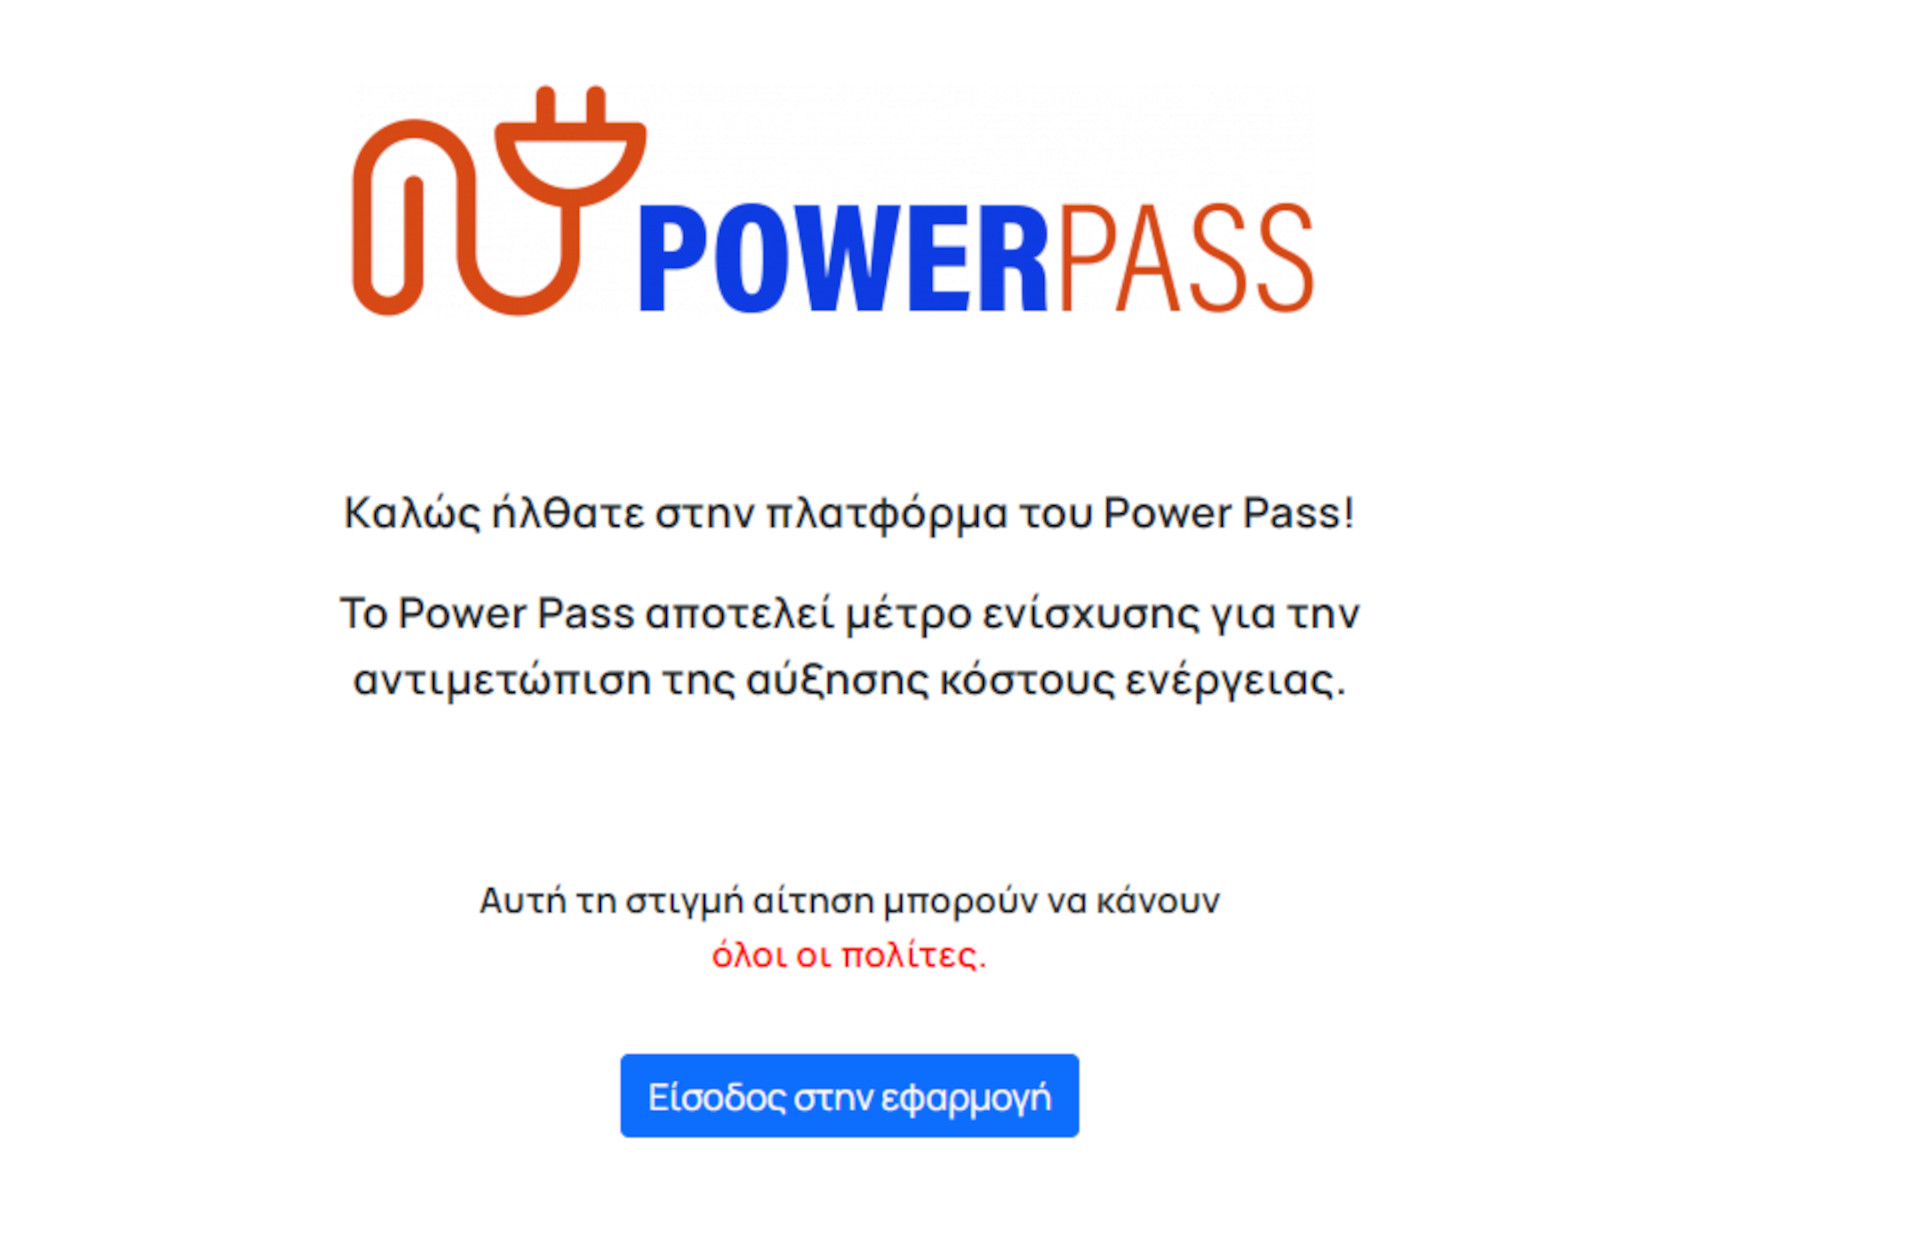 Power Pass: Διευκρινίσεις του υπουργείου Ψηφιακής Διακυβέρνησης για δυσλειτουργίες